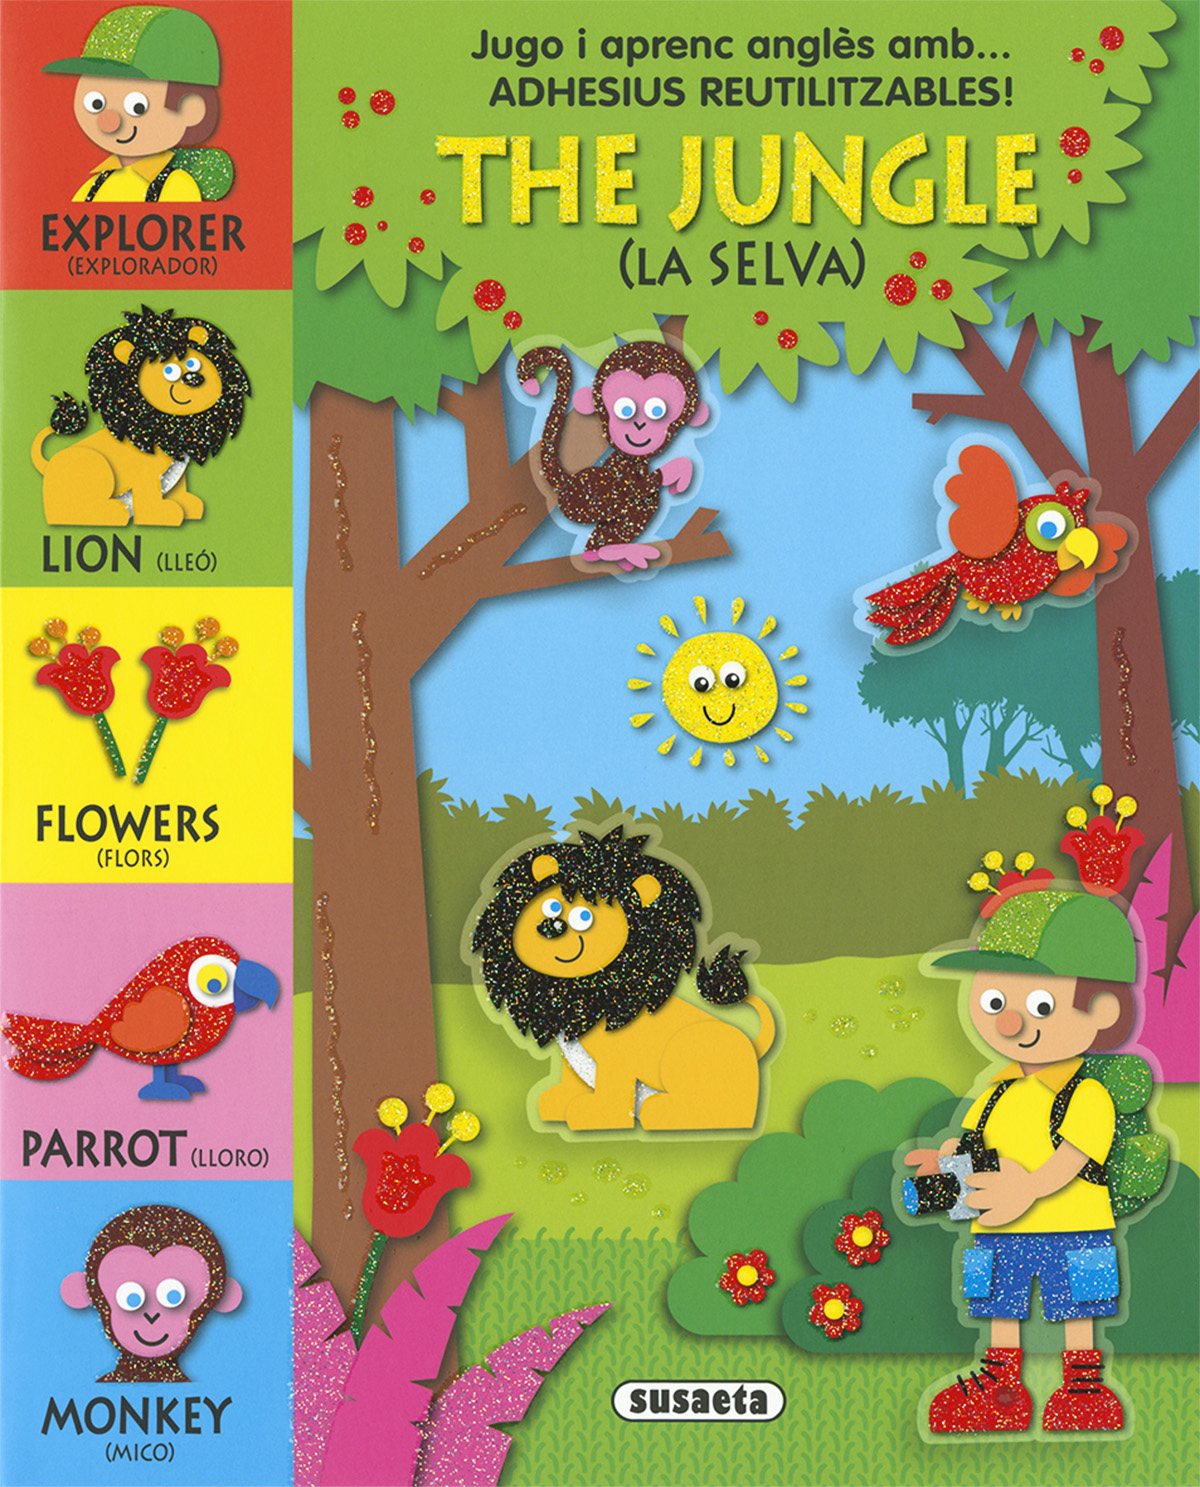 The jungle (La selva)